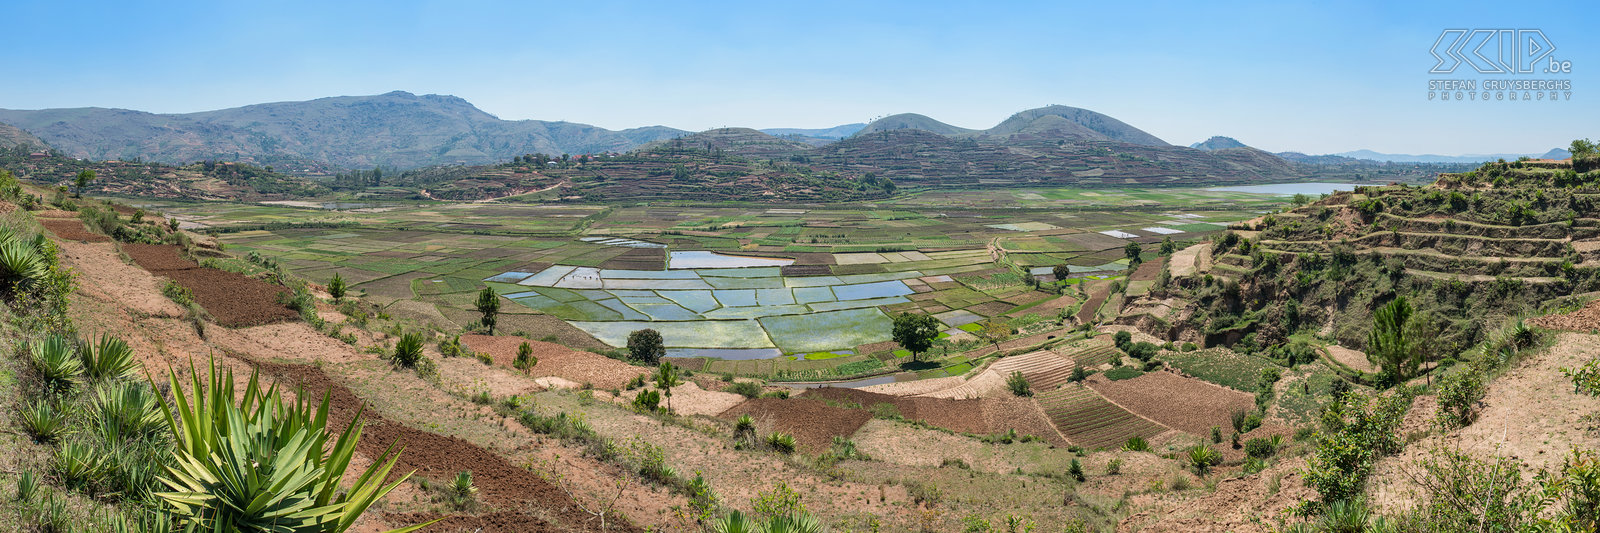 Befato - Rijstvelden De regio rond de stad Antsirabe ligt op een hoogte van ongeveer 1200m tot 1600m en het klimaat is er subtropisch hoogland. Dit is perfect voor de landbouw en in deze regio vind je dan ook overal terrassen en velden met rijst en groenten. Stefan Cruysberghs